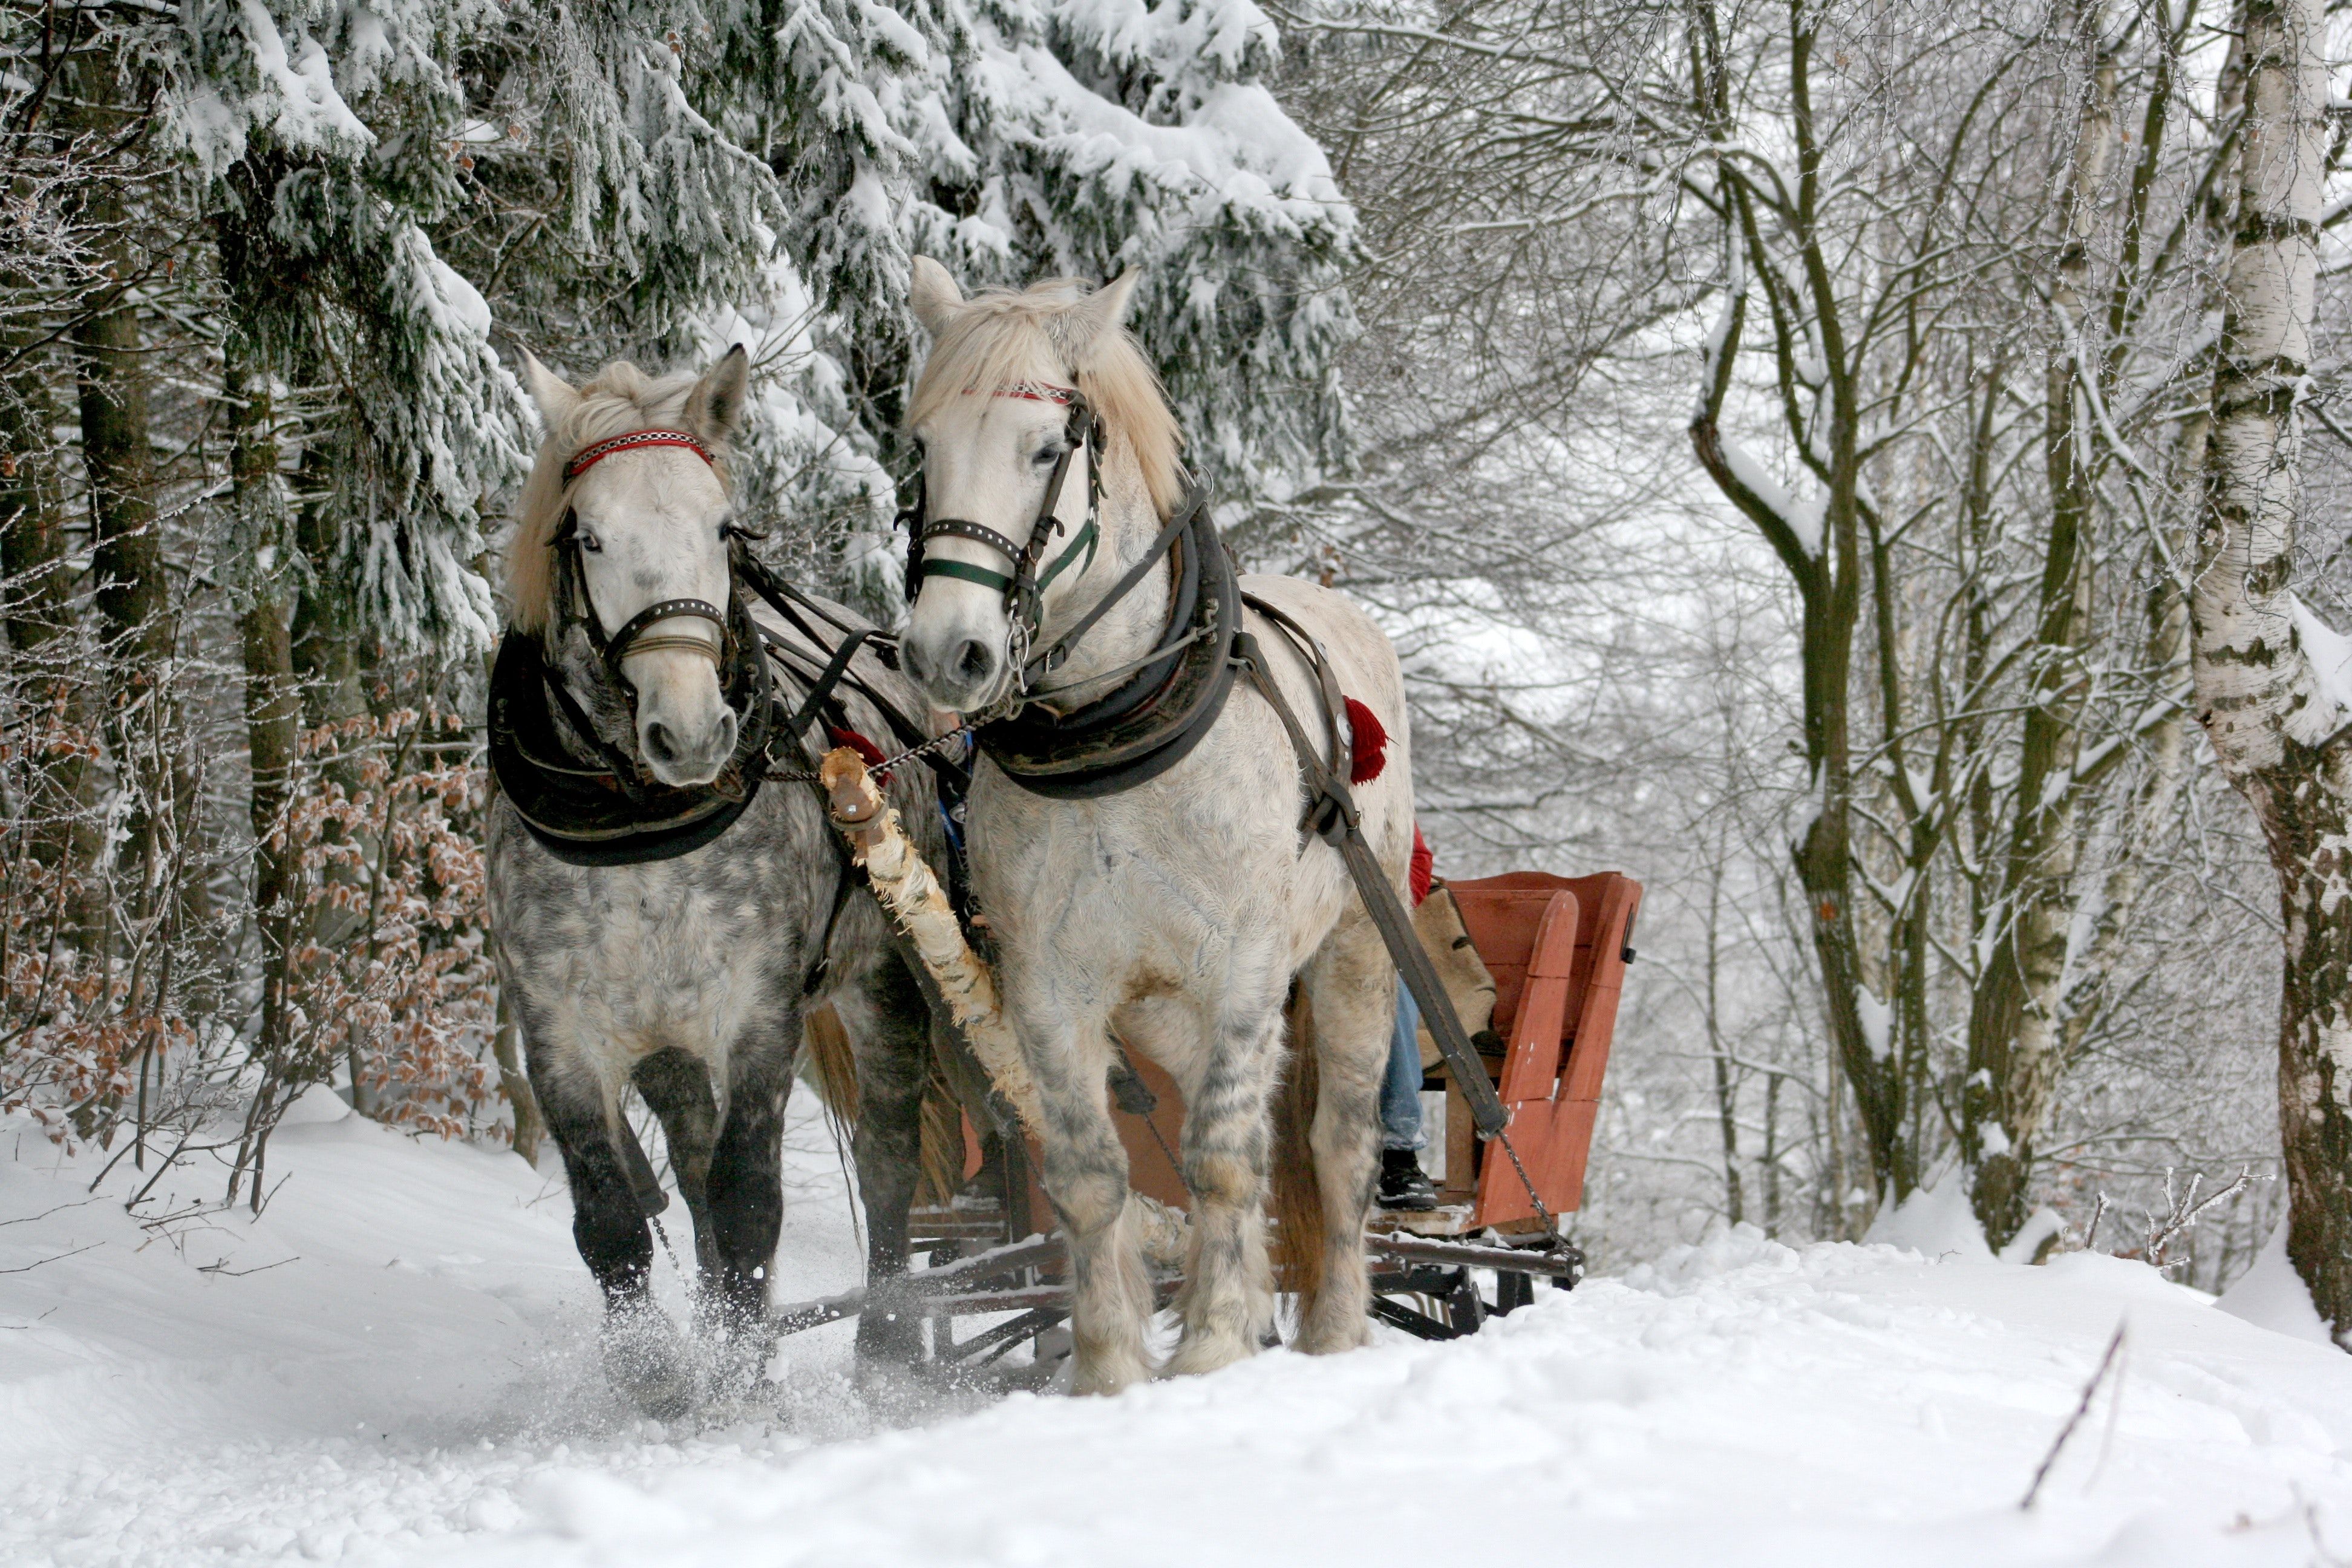  Winter Tiere Hintergrundbild 3888x2592. Kostenloses Foto zum Thema: pferde, schlitten, schlittenfahrt, schnee, tiere, wald, winter